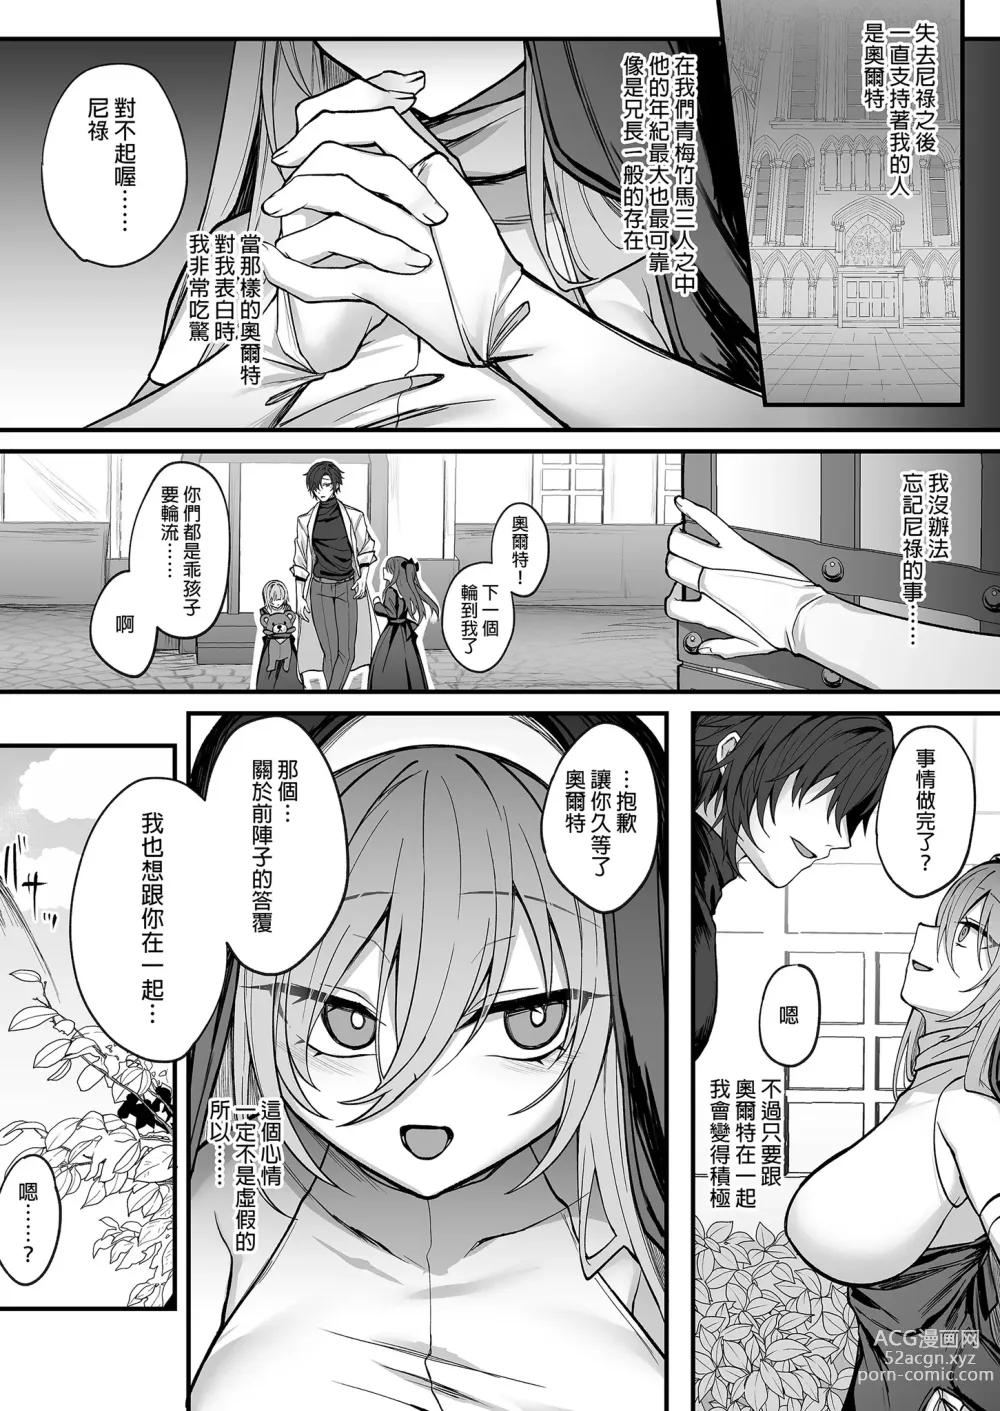 Page 9 of doujinshi Shinda to Omotte Ita Osananajimi ga Maou ni Natte Imashita. (decensored)